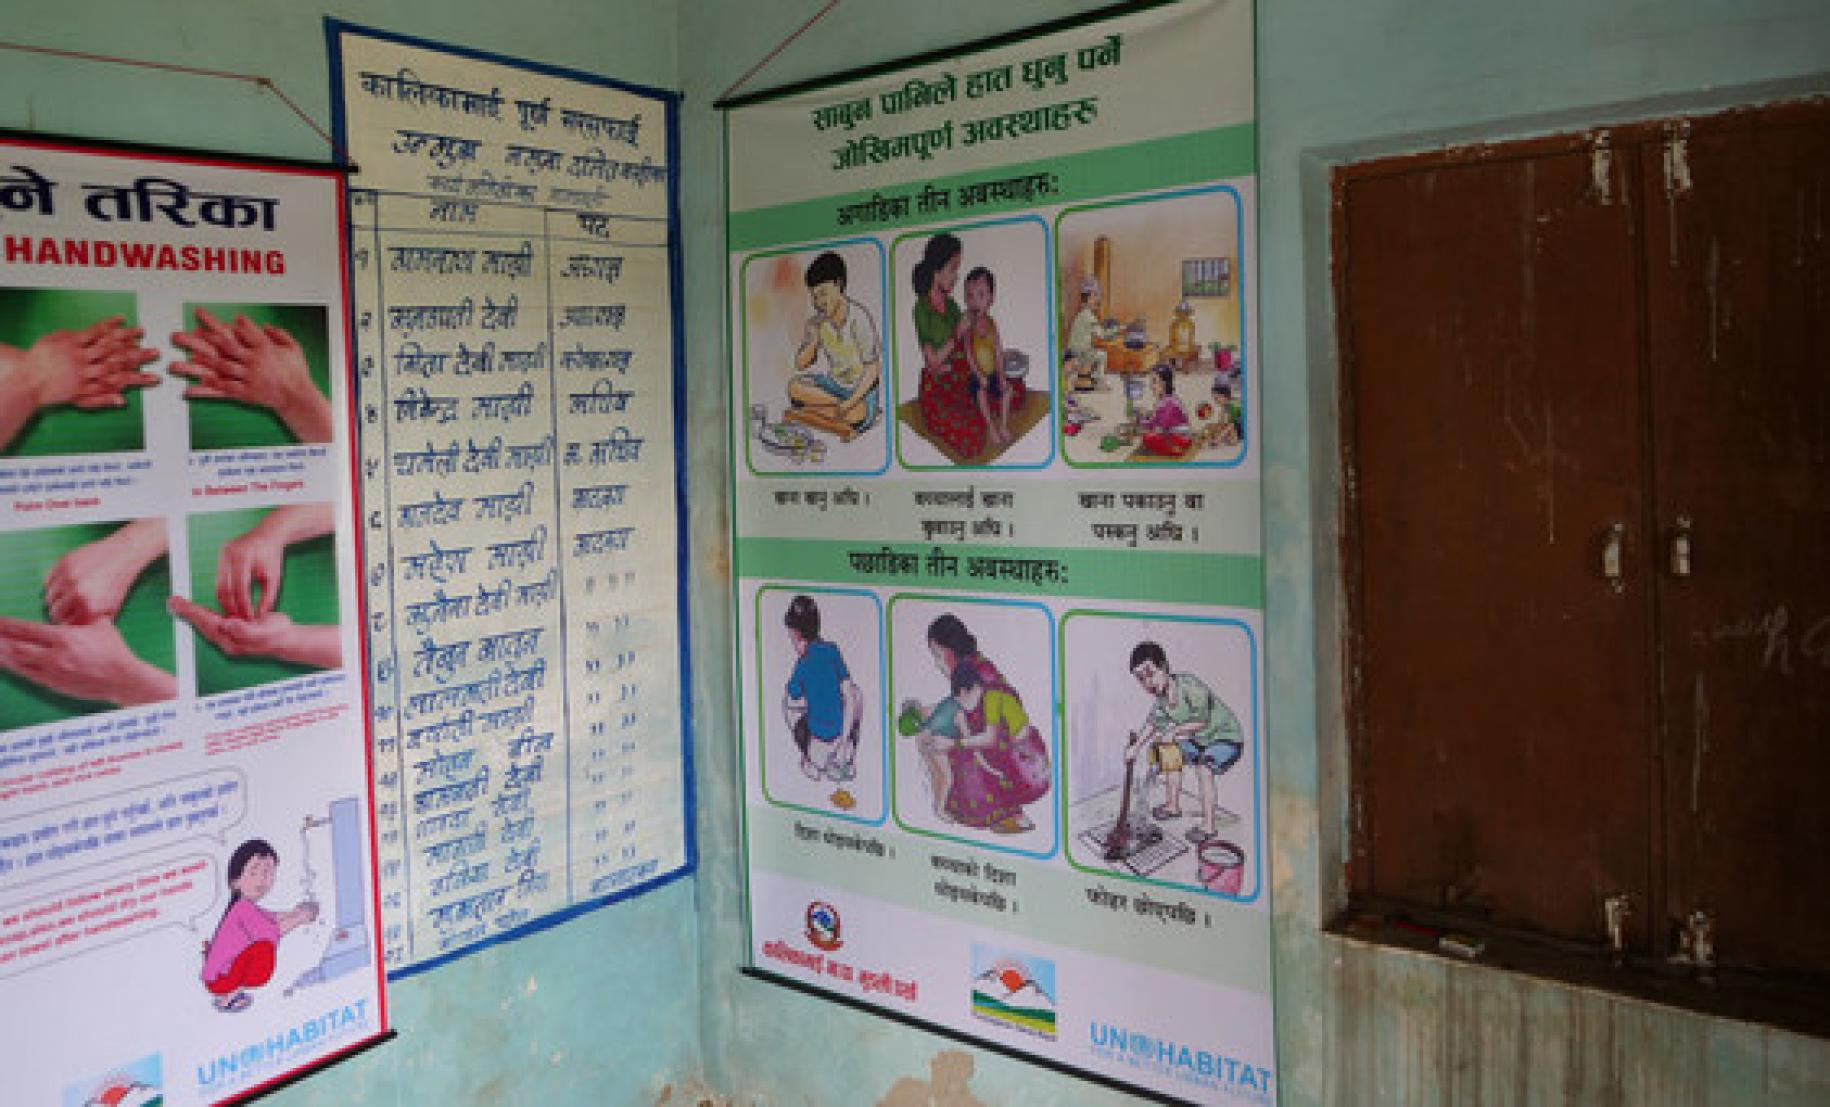 Los carteles en Majhi's promueven los beneficios sanitarios del uso de retretes y del lavado de manos.